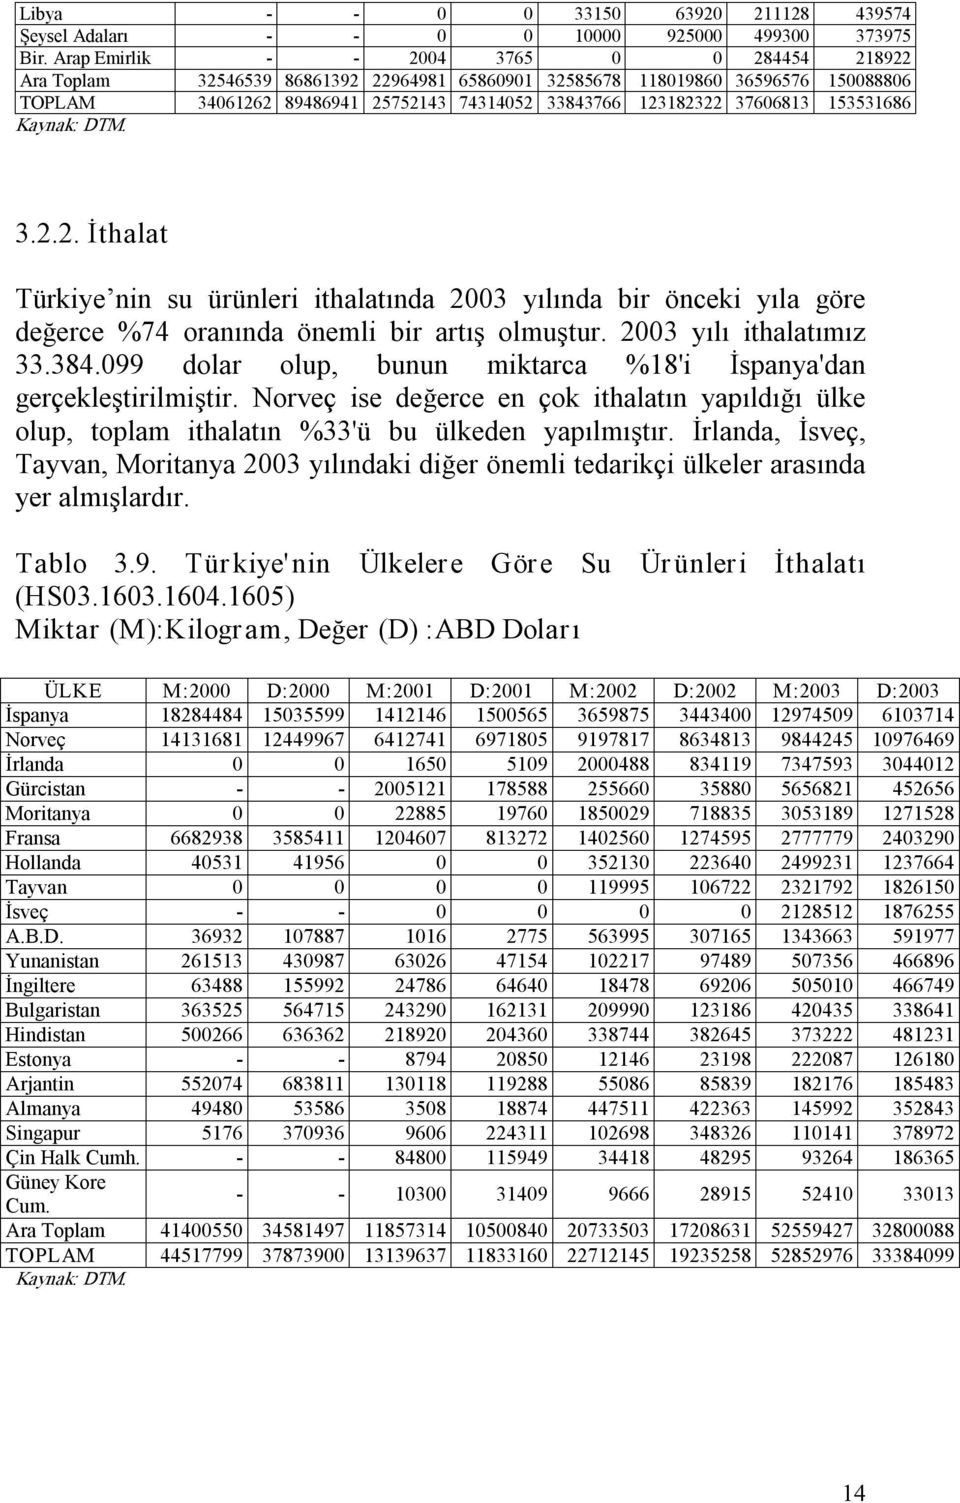 153531686 Kaynak: DTM. 3.2.2. İthalat Türkiye nin su ürünleri ithalatında 2003 yılında bir önceki yıla göre değerce %74 oranında önemli bir artış olmuştur. 2003 yılı ithalatımız 33.384.